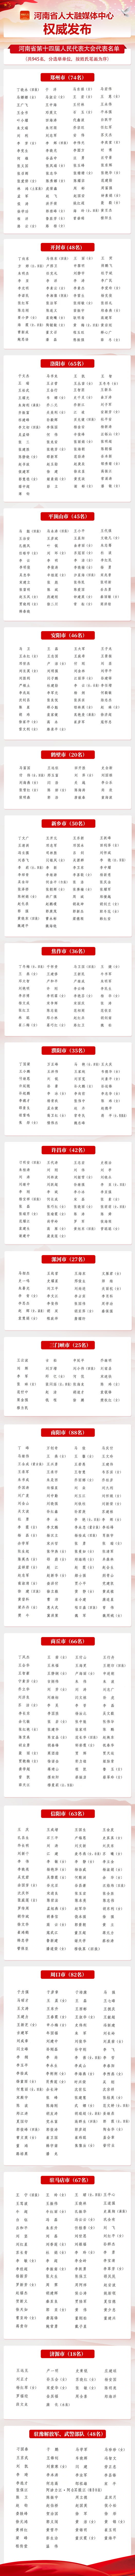 河南省第十四届人民代表大会代表名单